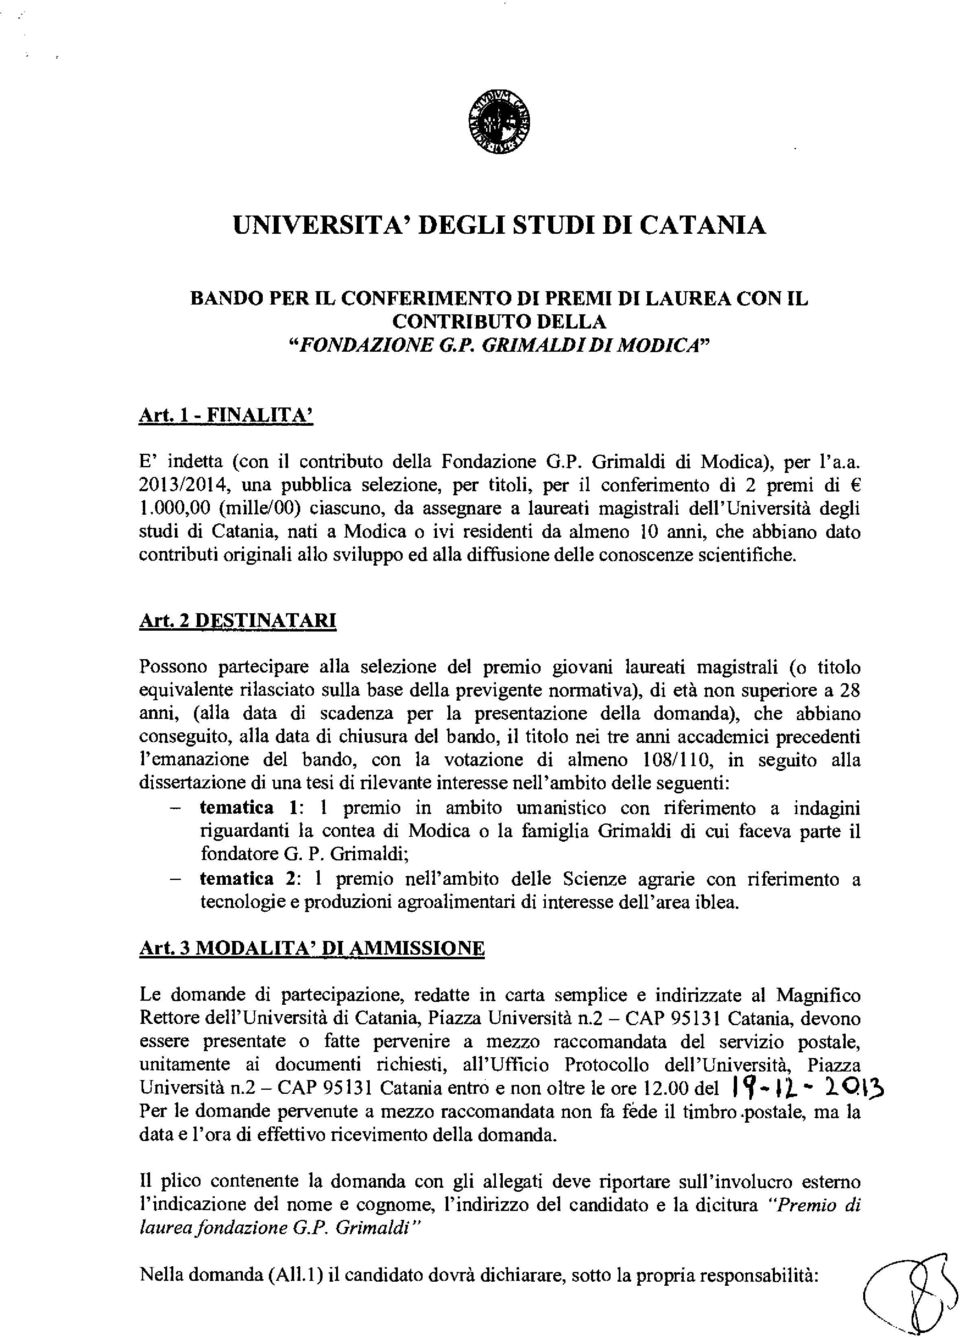 000,00 (mille/00) ciascuno, da assegnare a laureati magistrali dell'università degli studi di Catania, nati a Modica o ivi residenti da almeno 10 anni, che abbiano dato contributi originali allo